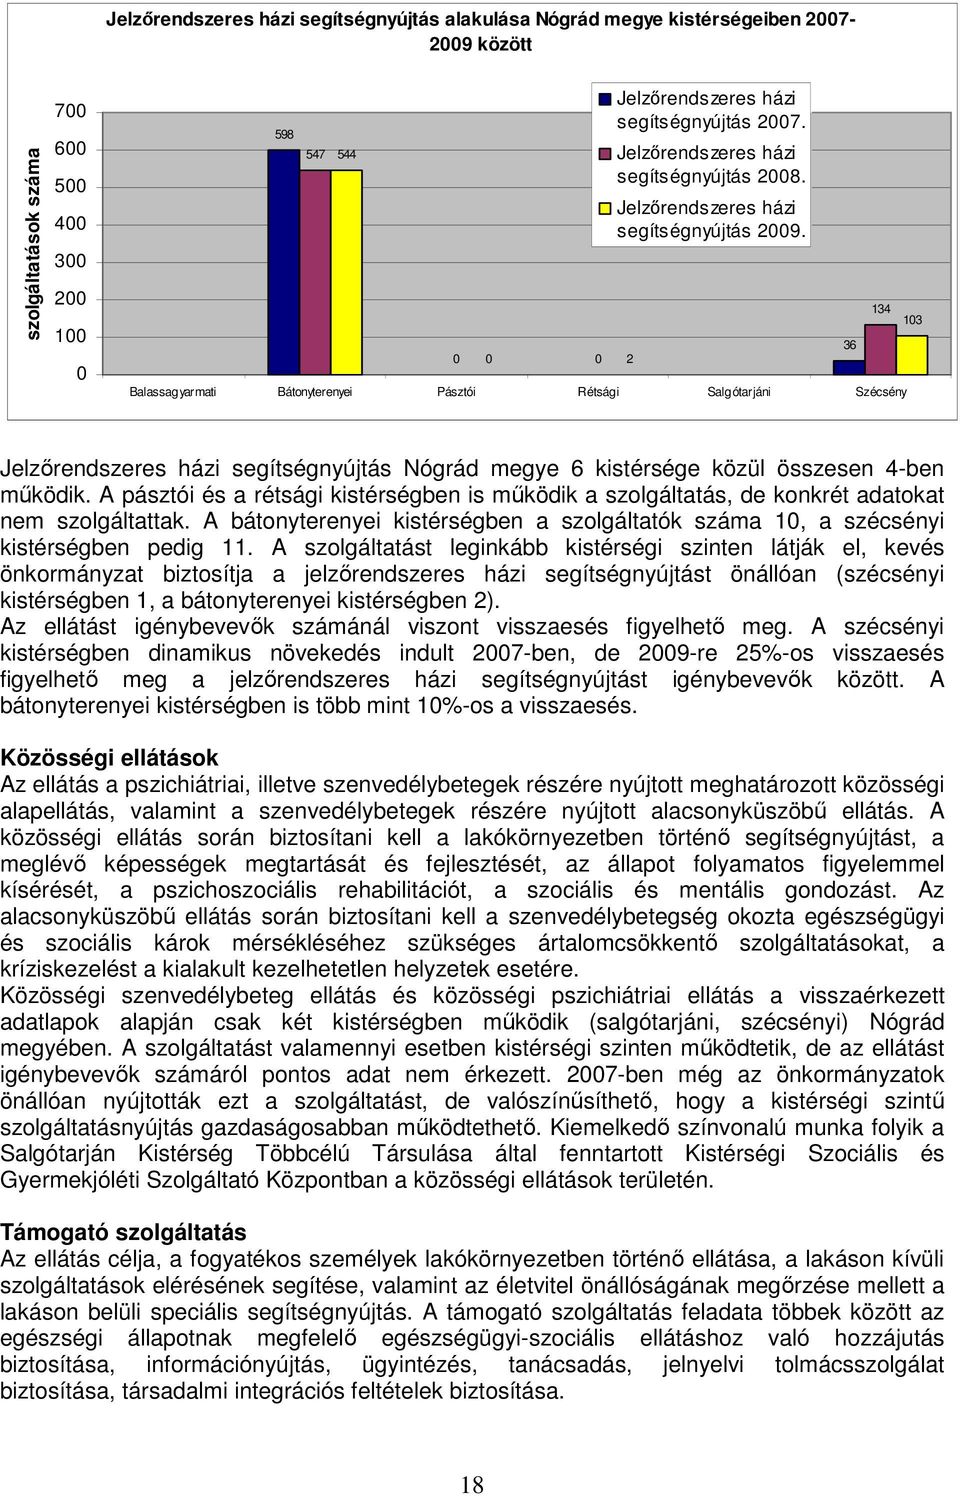 Balassagyarmati Bátonyterenyei Pásztói Rétsági Salgótarjáni Szécsény 36 134 103 Jelzırendszeres házi segítségnyújtás Nógrád megye 6 kistérsége közül összesen 4-ben mőködik.